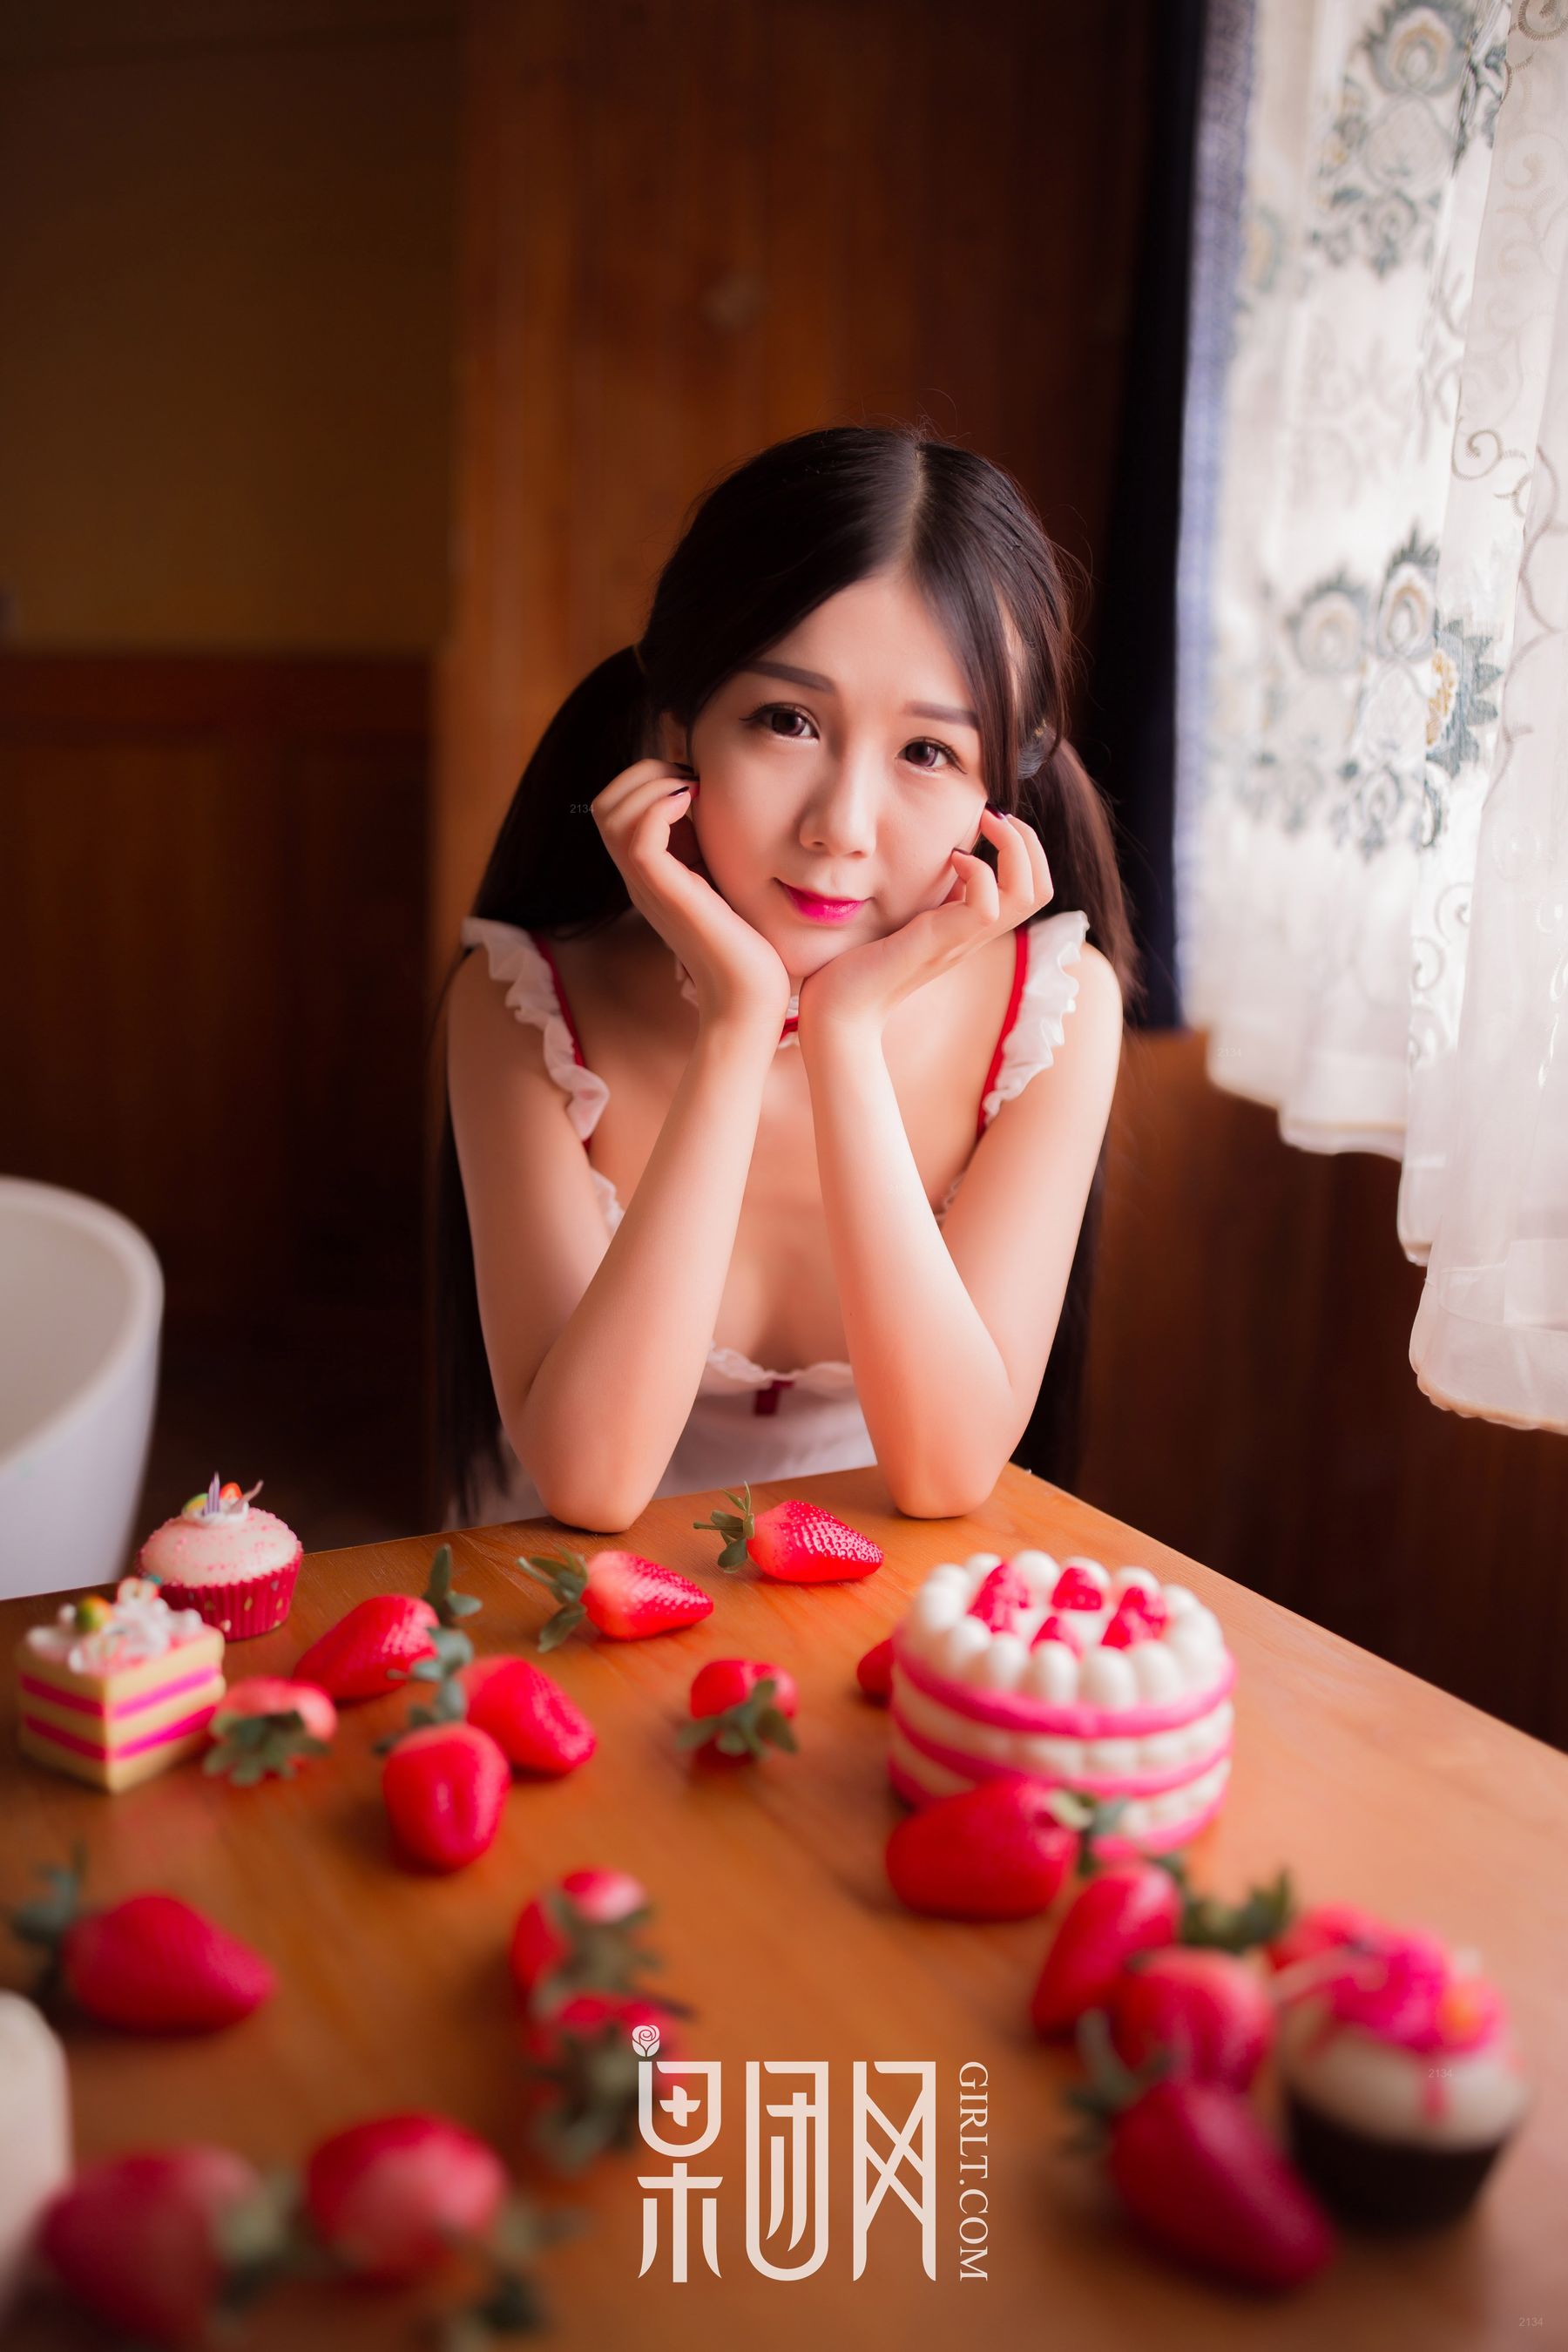 《草莓女孩》 [果团Girlt-熊川纪信] No.024 写真集(第2页)